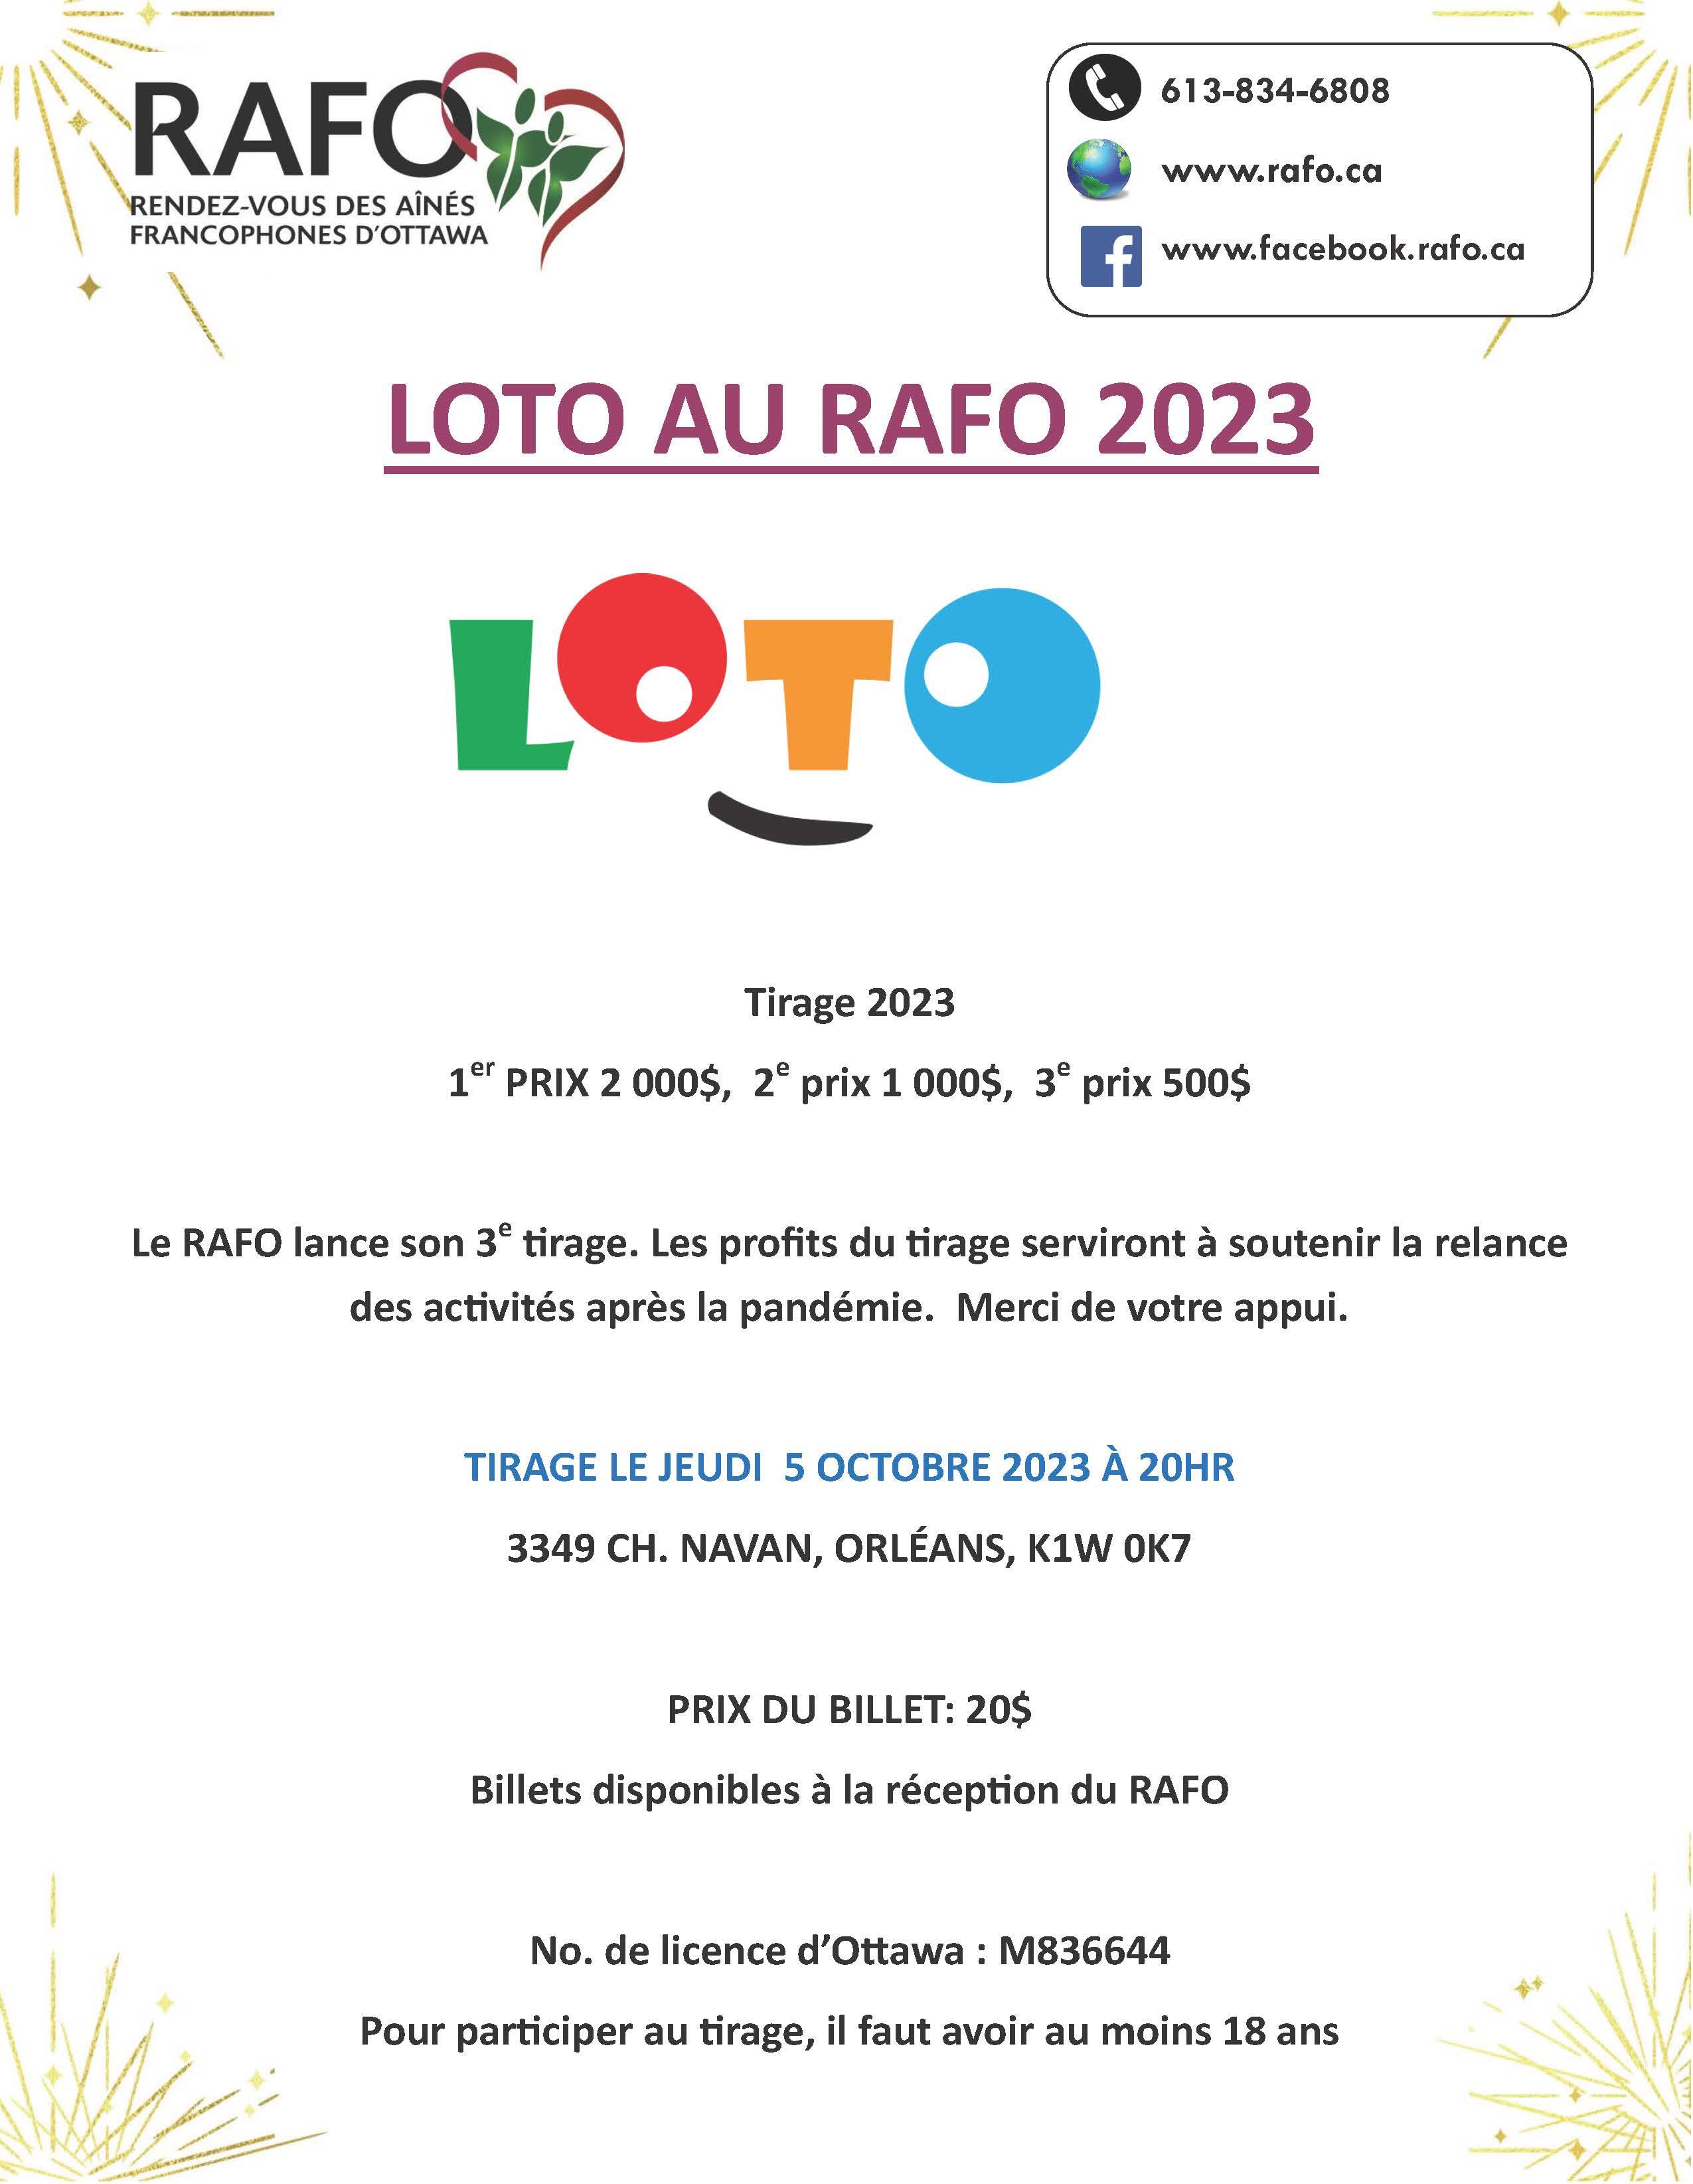 Encore cette année, le RAFO lance sa loterie, la Loto RAFO 2023.